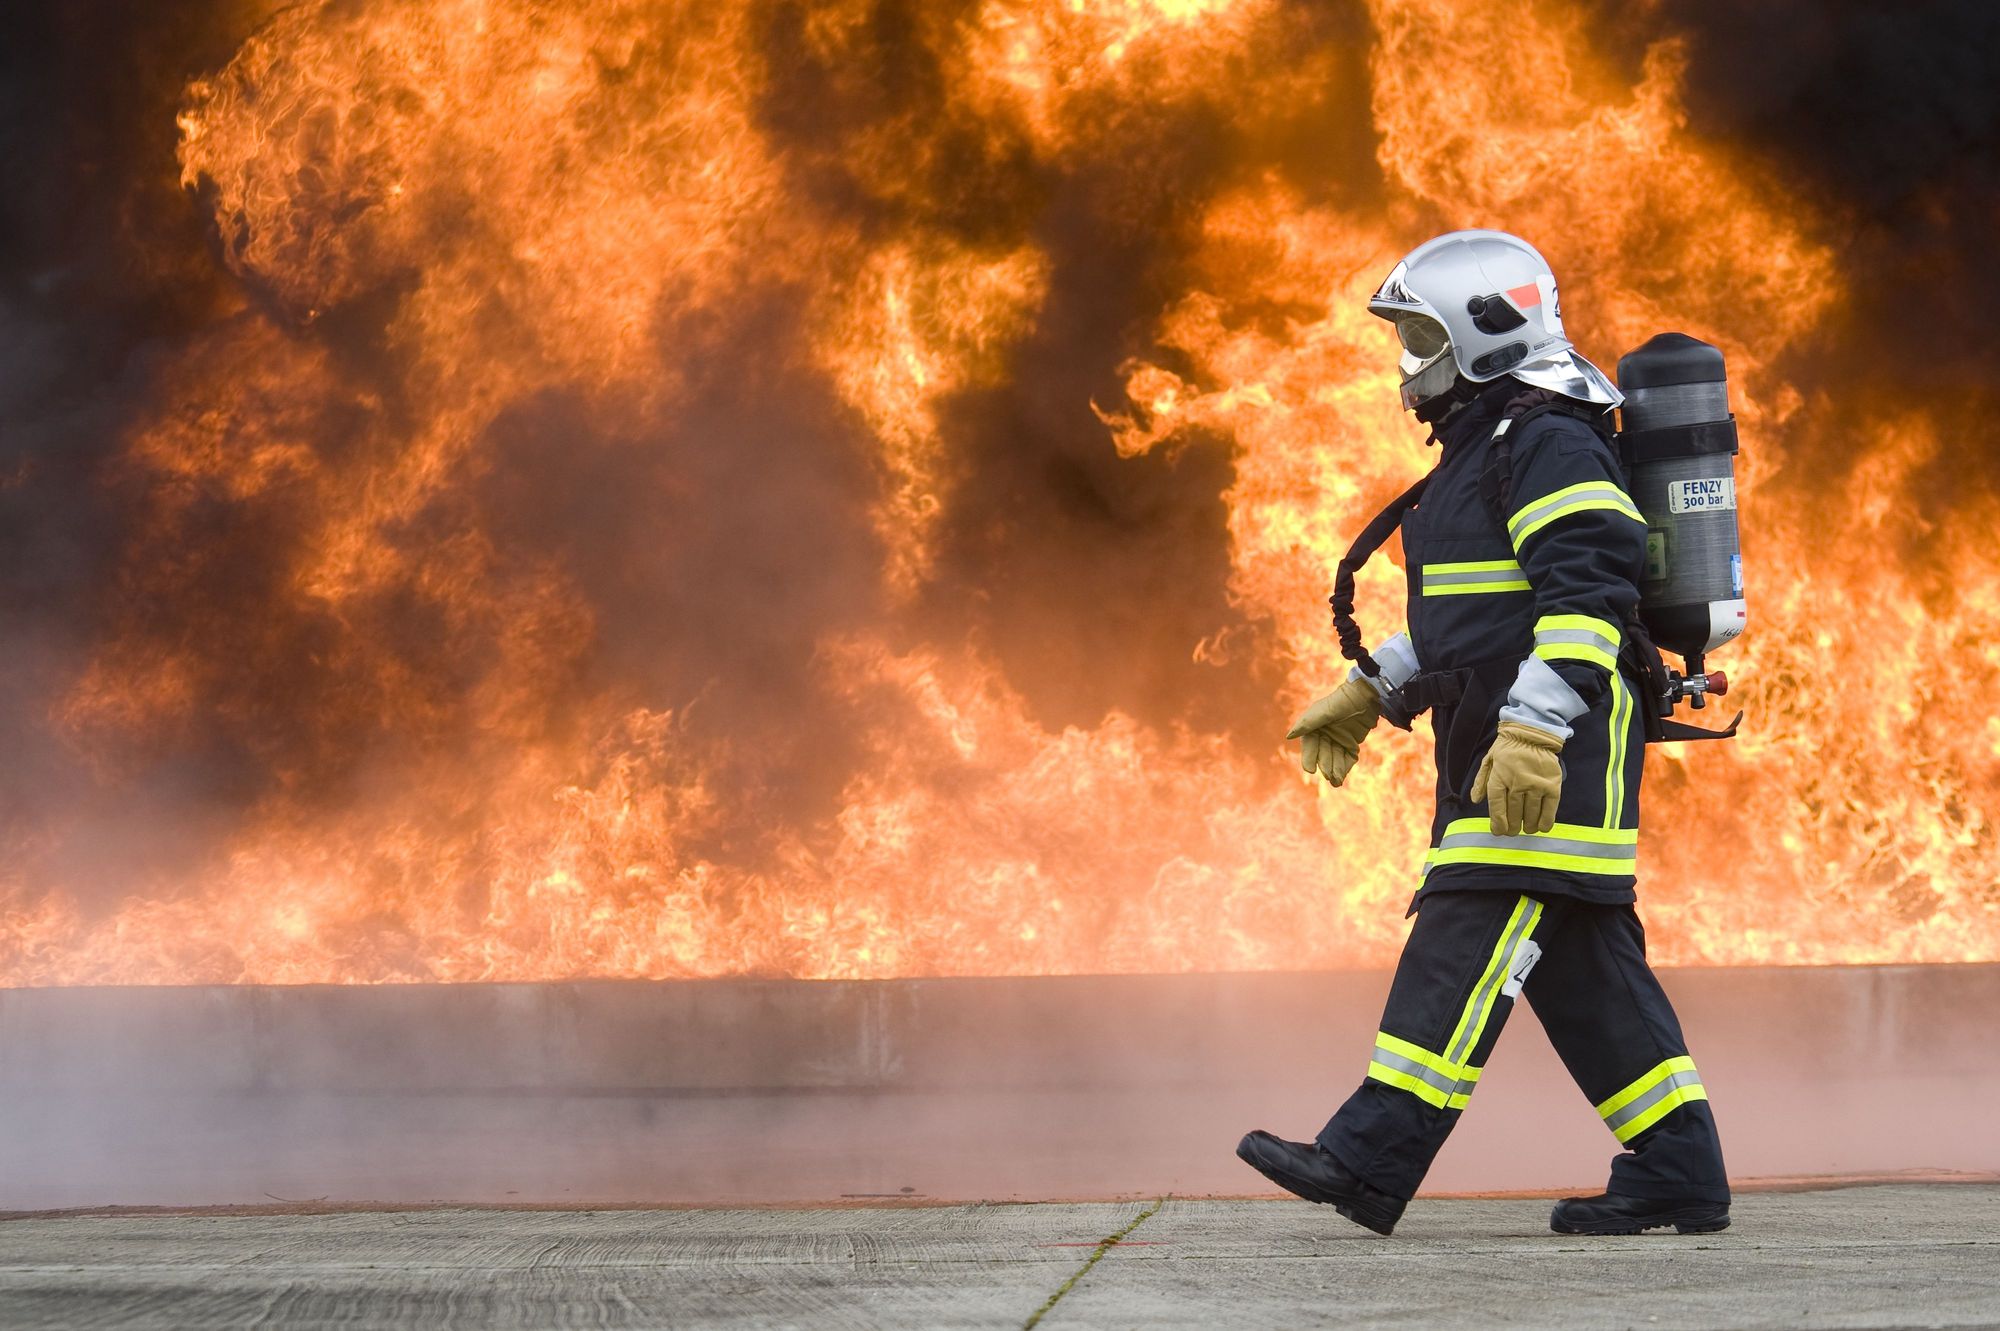 Limoges : fatigué par la sirène des pompiers, il va se plaindre !